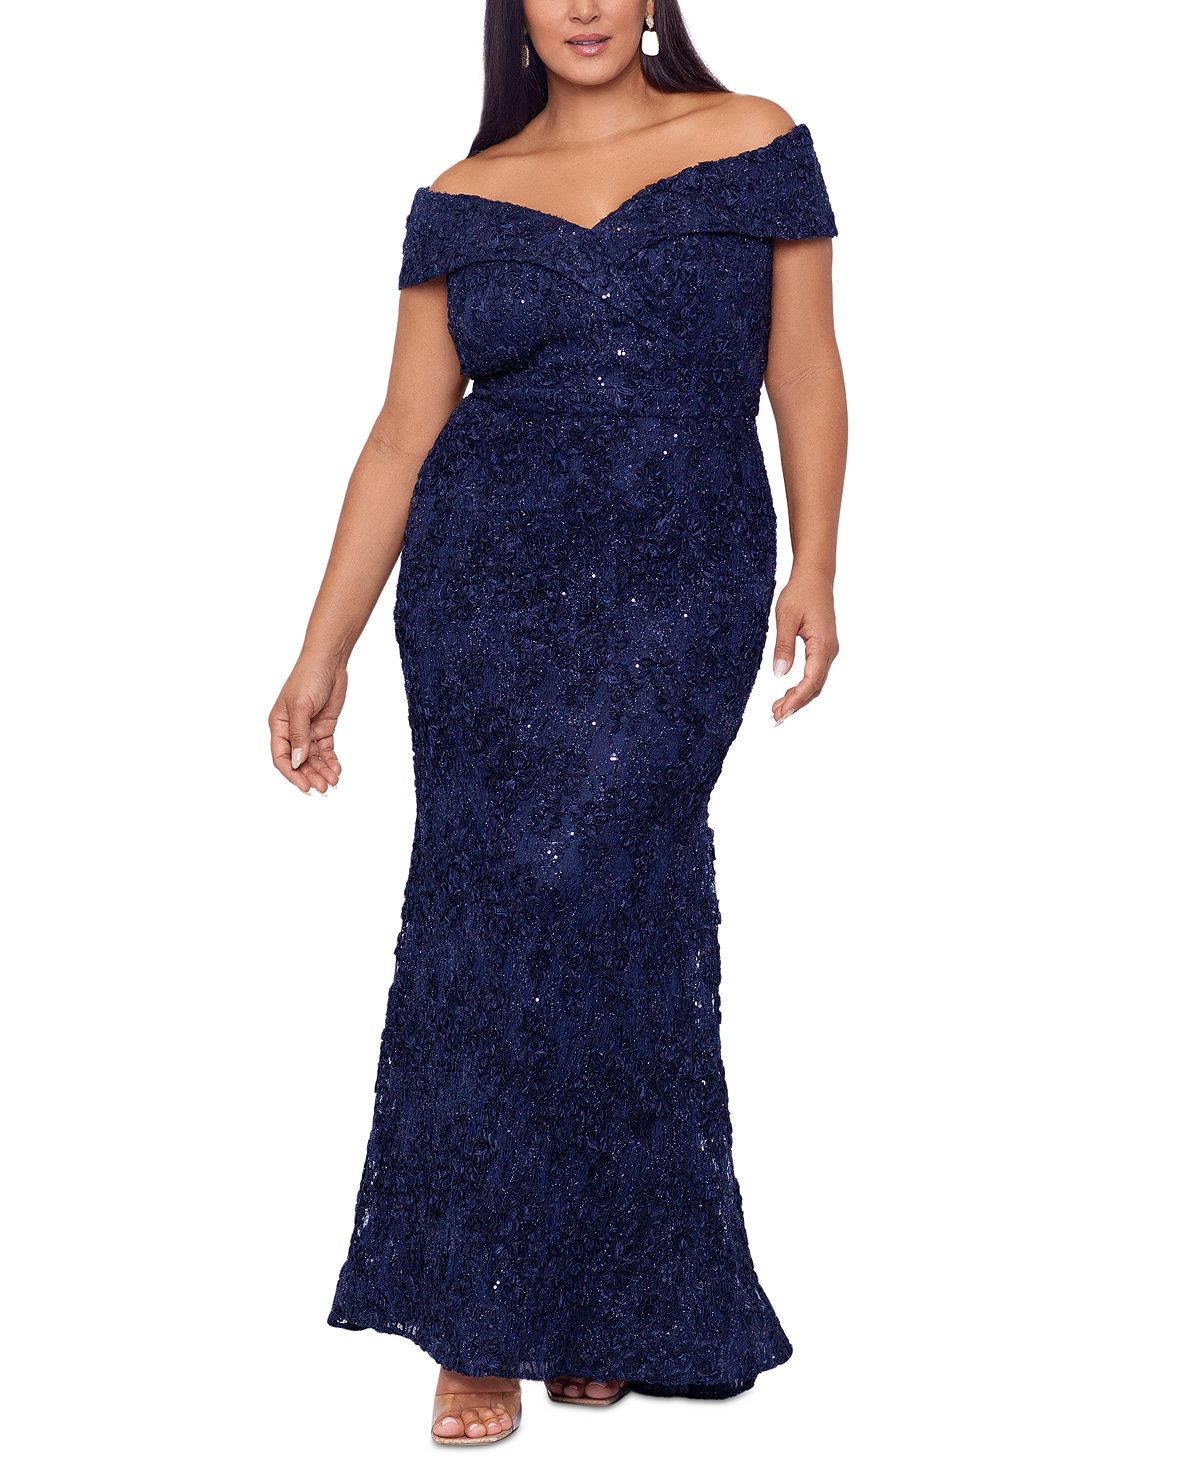 Плюс размер украшенное кружевное платье с открытыми плечами XSCAPE, синий